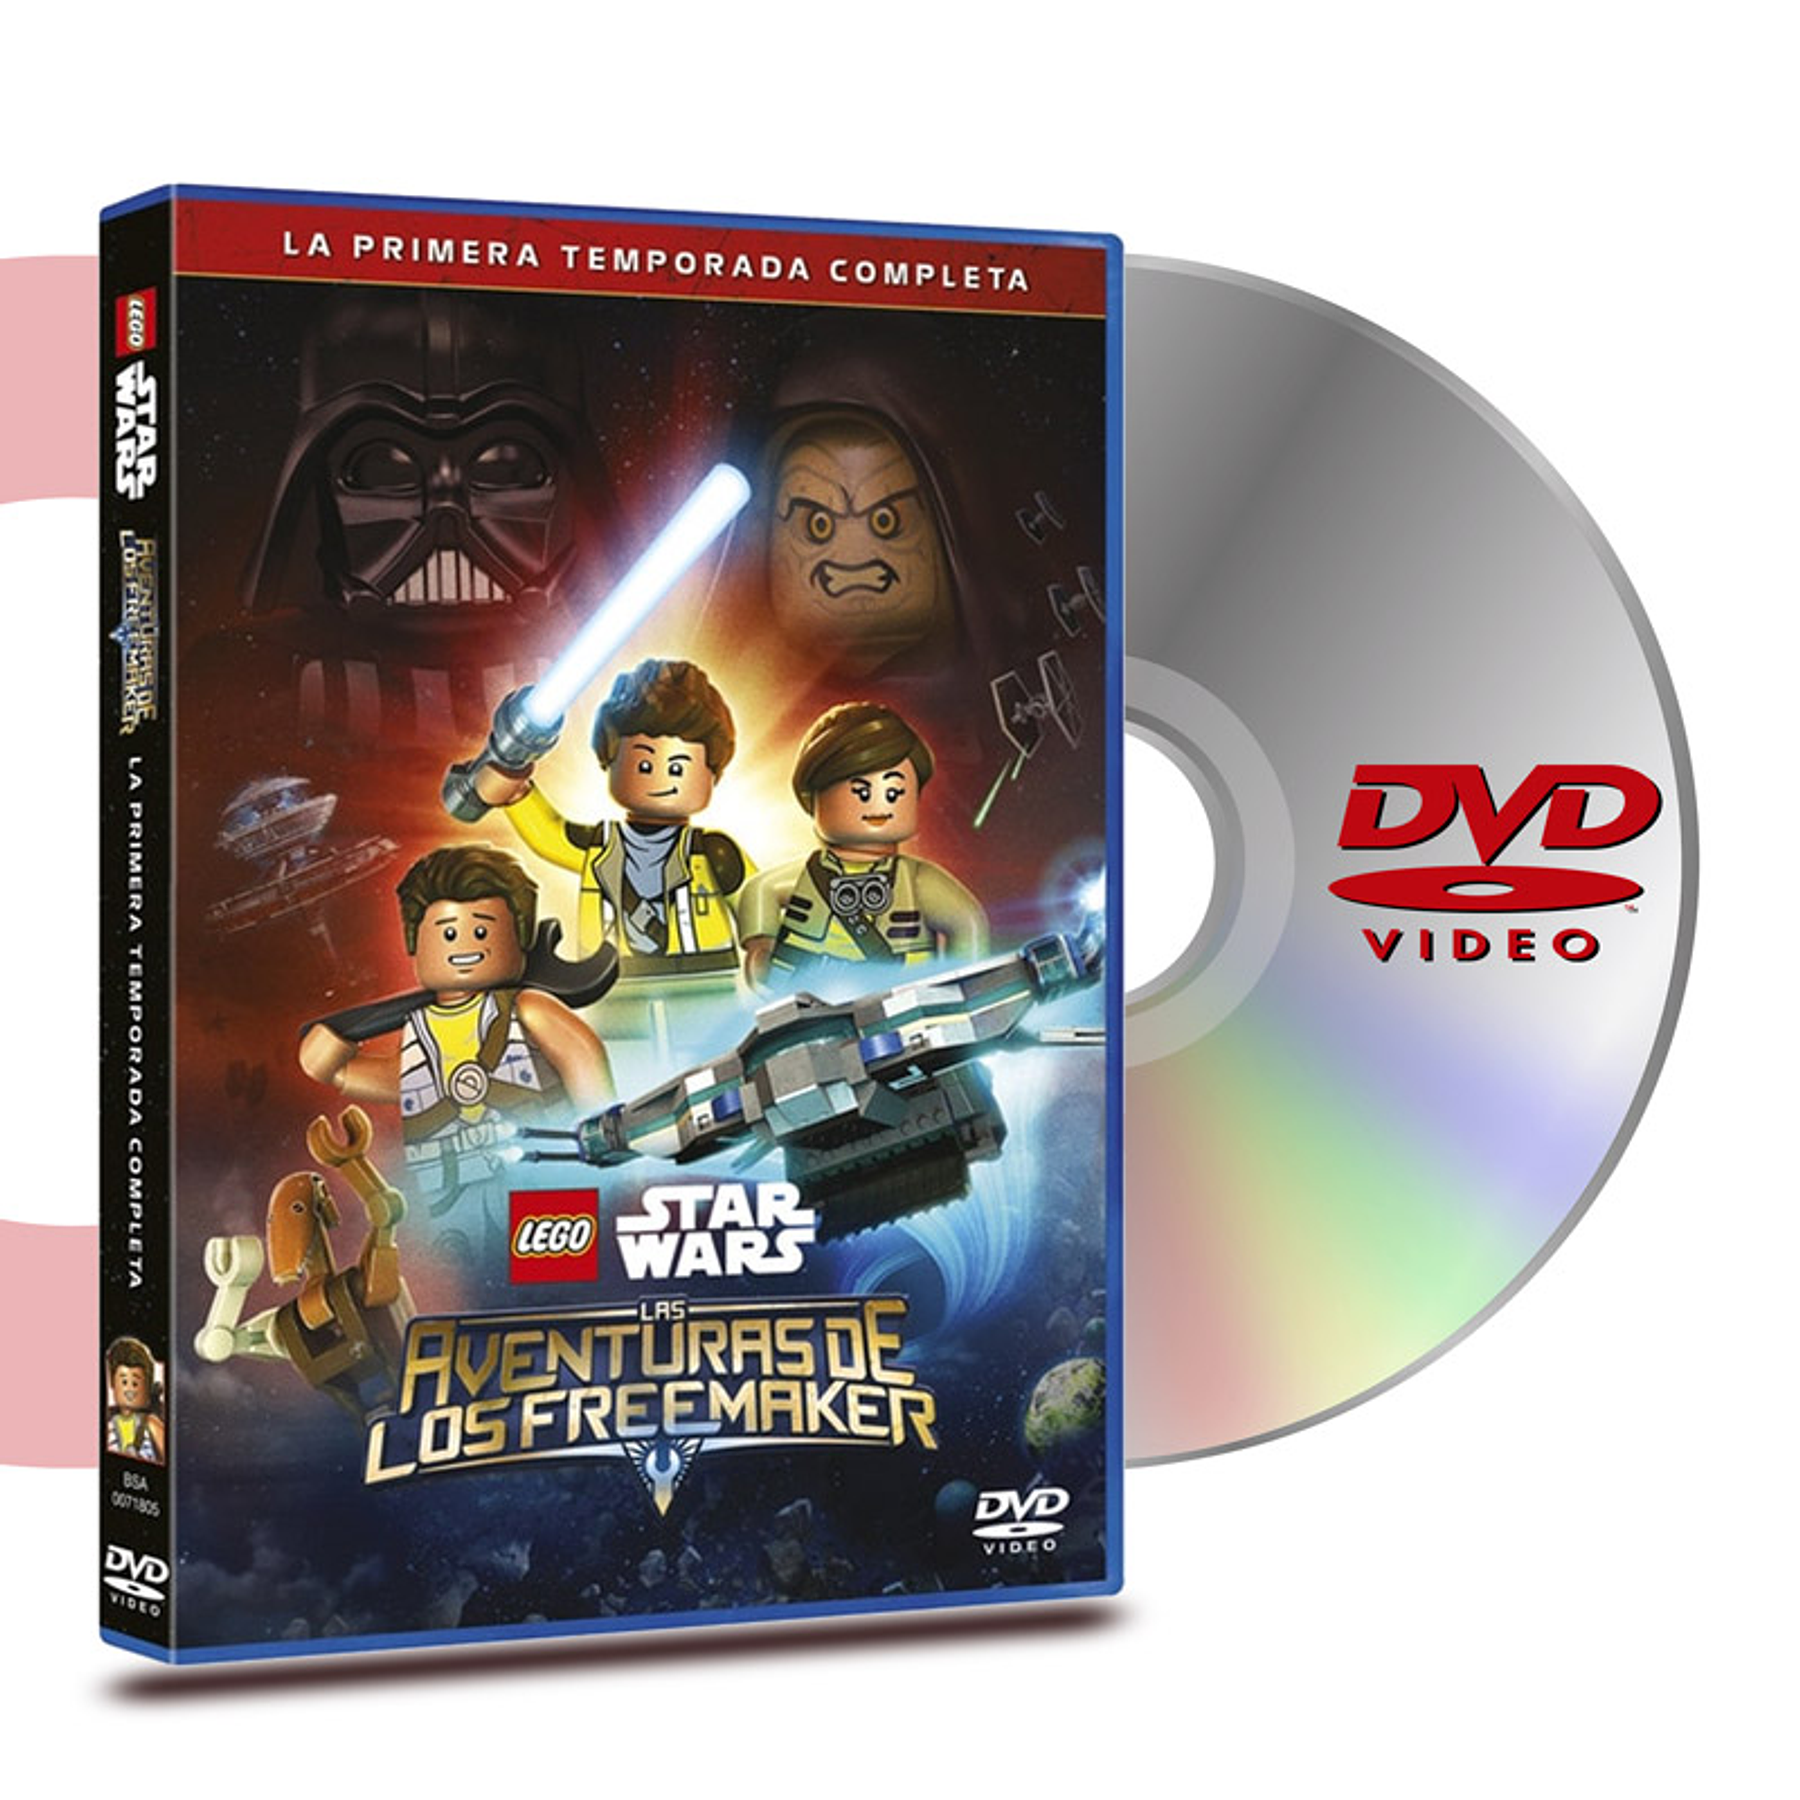 DVD LEGO STAR WARS TEMP1: AVENTURAS DE LOS FREEMAKER (2 DISCOS)